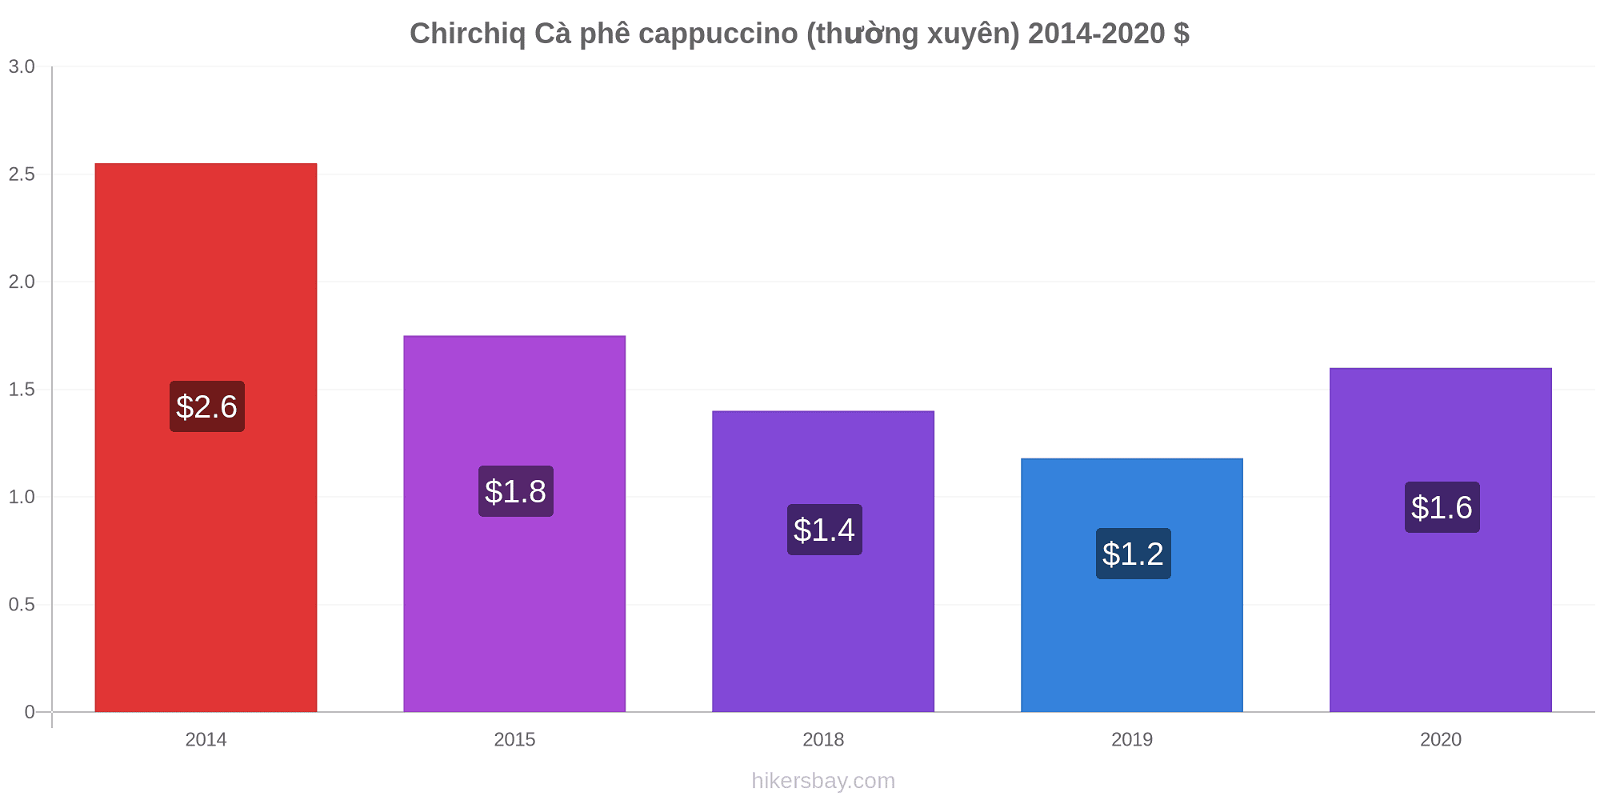 Chirchiq thay đổi giá Cà phê cappuccino (thường xuyên) hikersbay.com